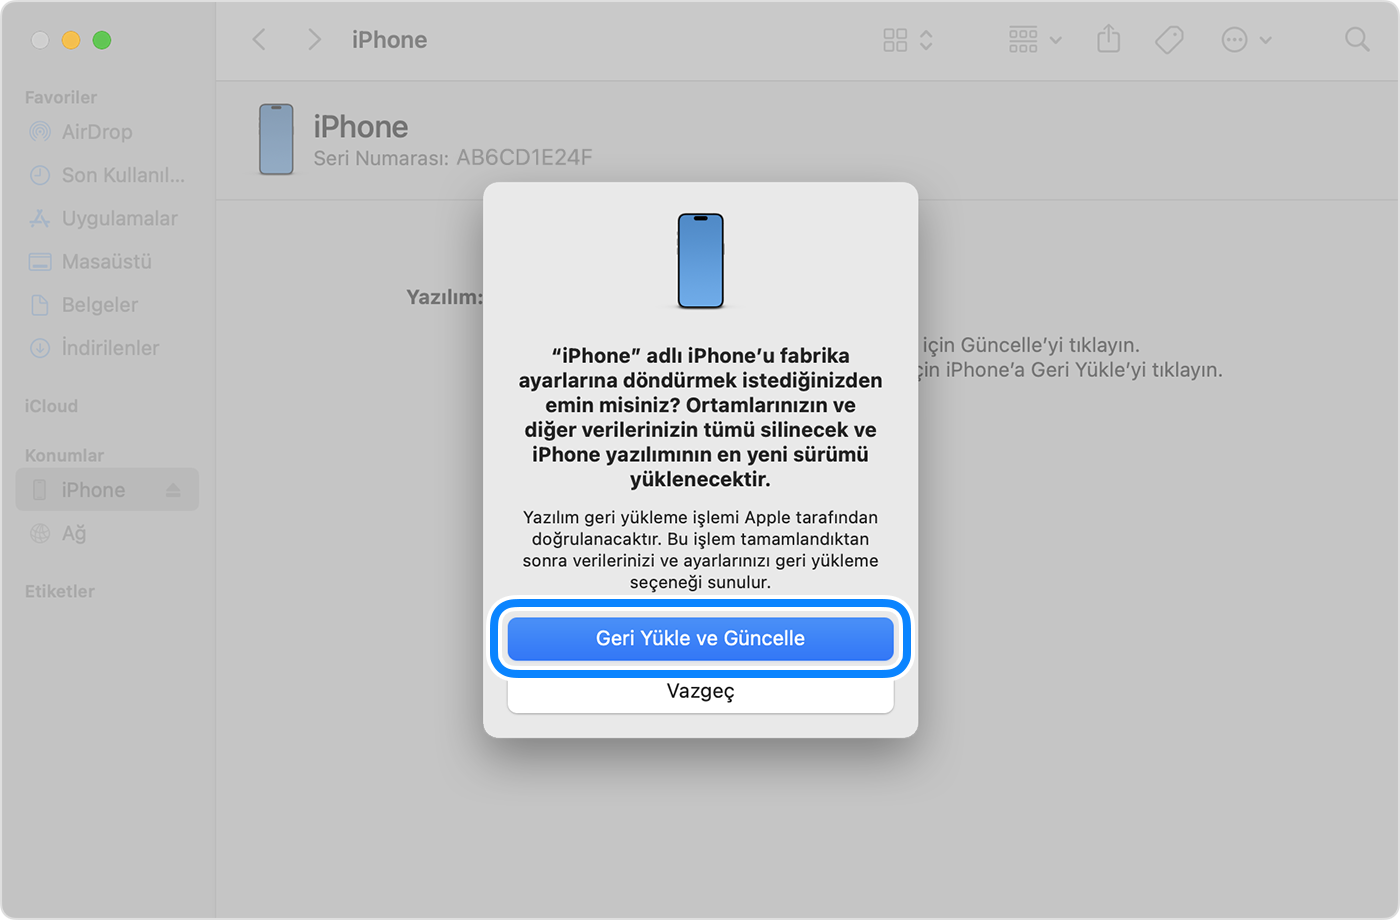 iPhone'unuzu bilgisayarınızla geri yüklemek ve güncellemek için Geri Yükle ve Güncelle seçeneğine dokunarak işlemi onaylamanız gerekir.